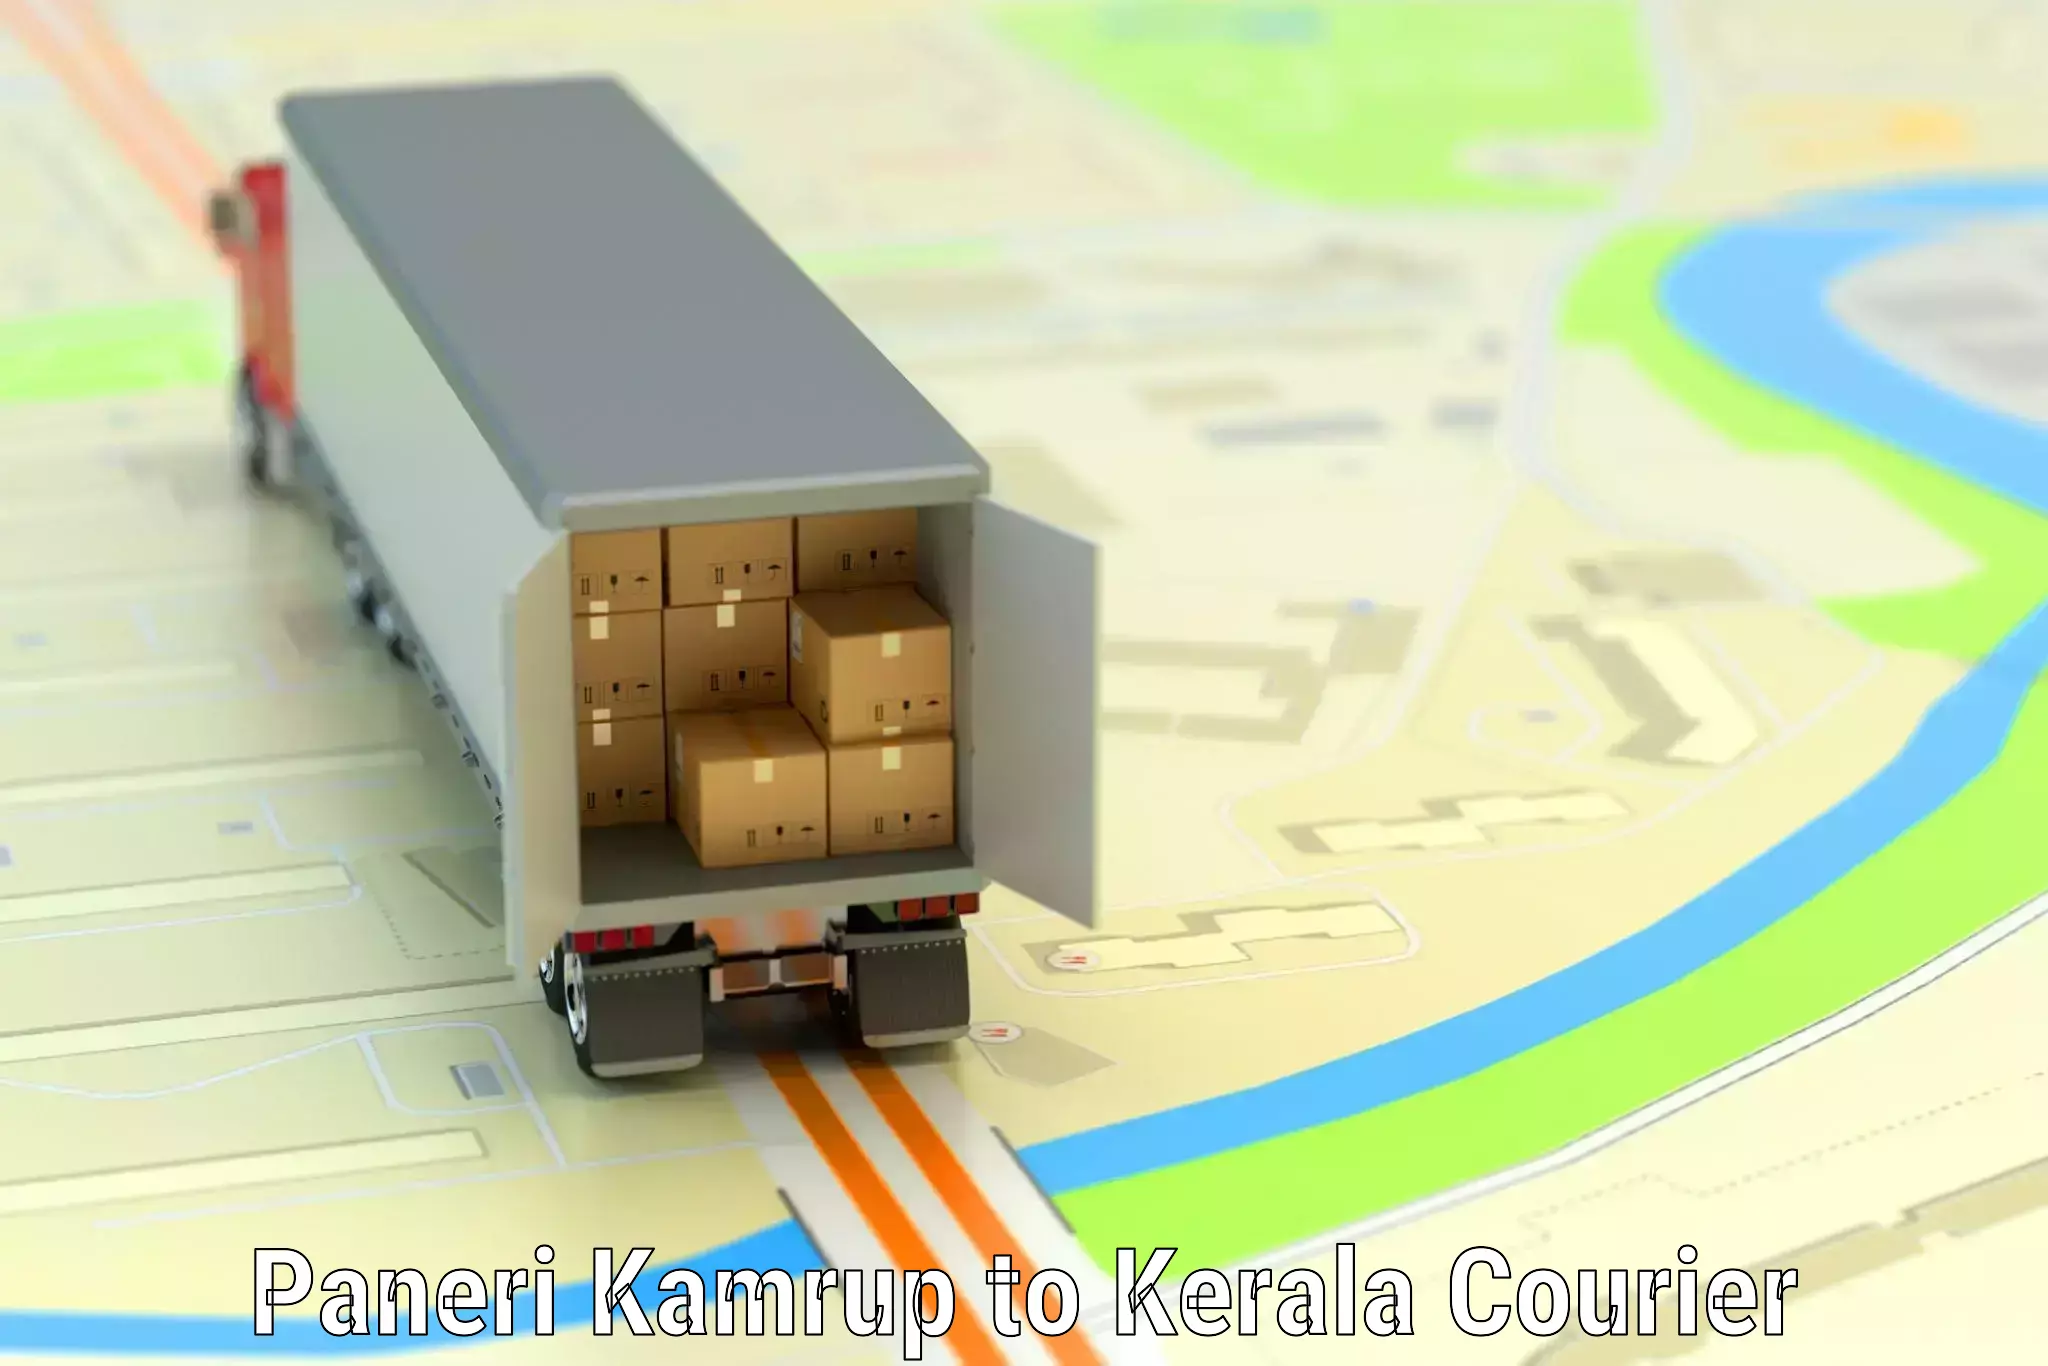 Business luggage transport in Paneri Kamrup to Kerala